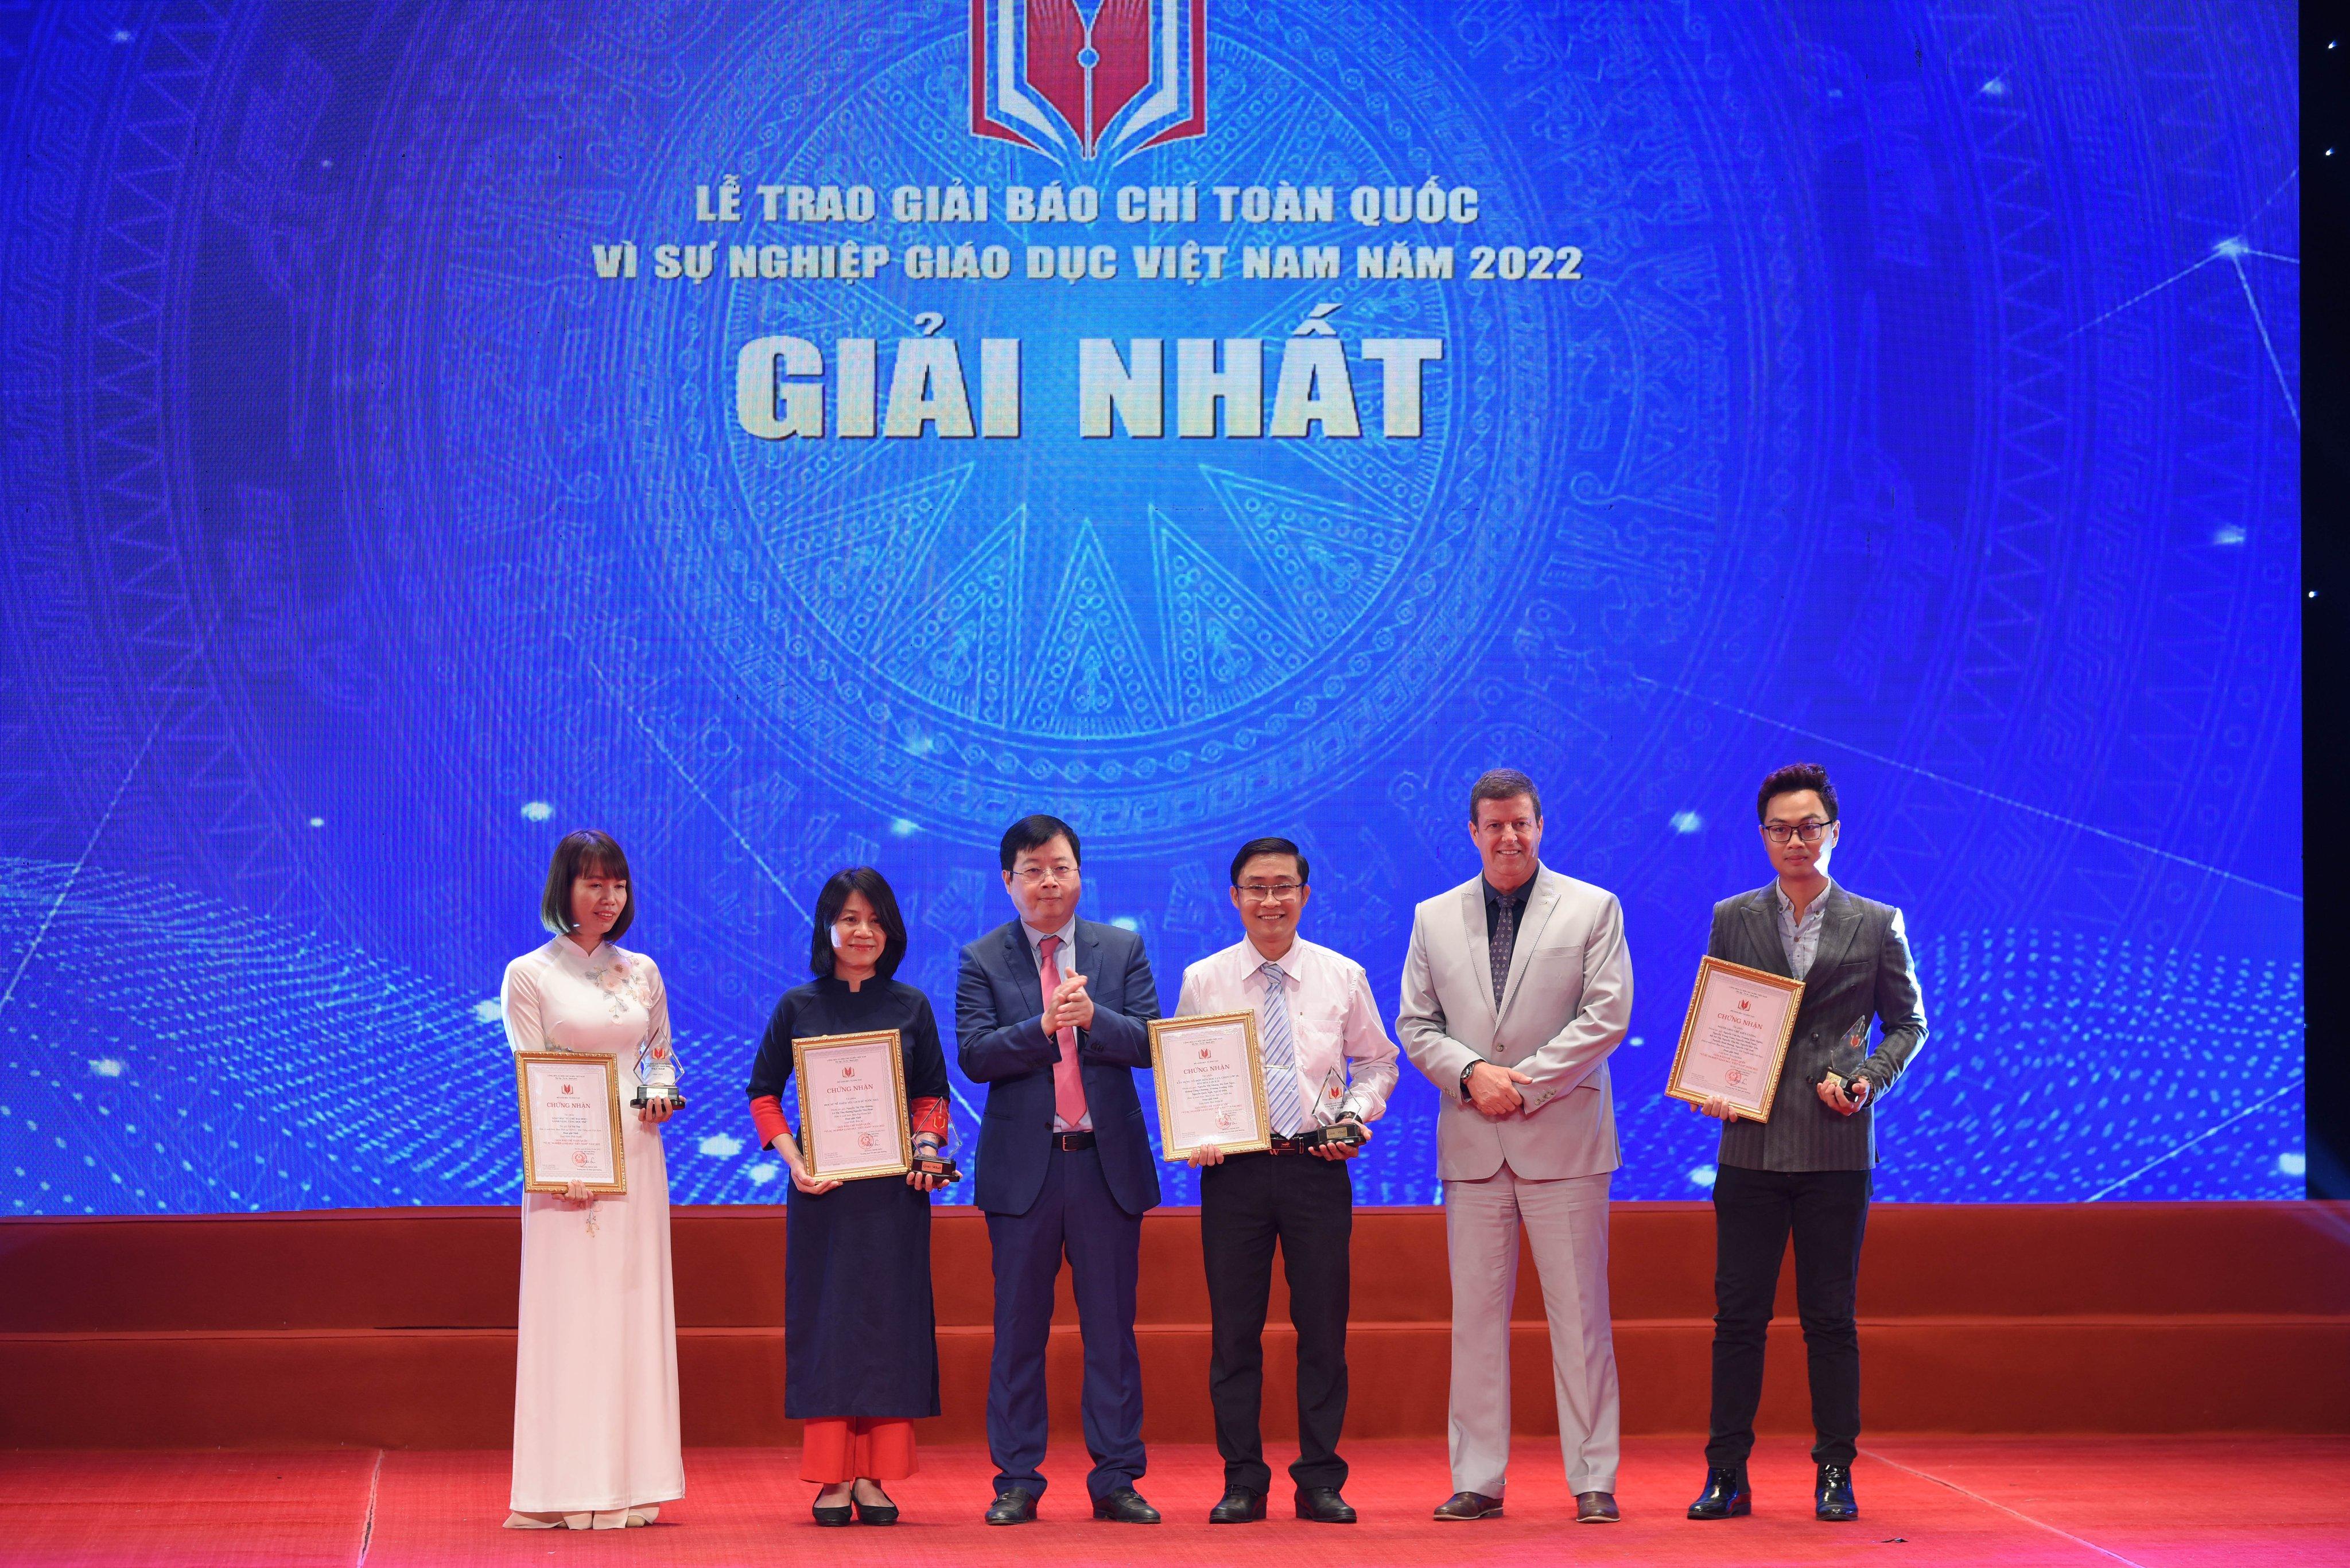 Thứ trưởng Bộ TT&TT Nguyễn Thanh Lâm và ông Rick Benett - Phó Hiệu trưởng Trường ĐH Anh quốc Việt Nam trao giải cho các tác giả đạt giải Nhất.